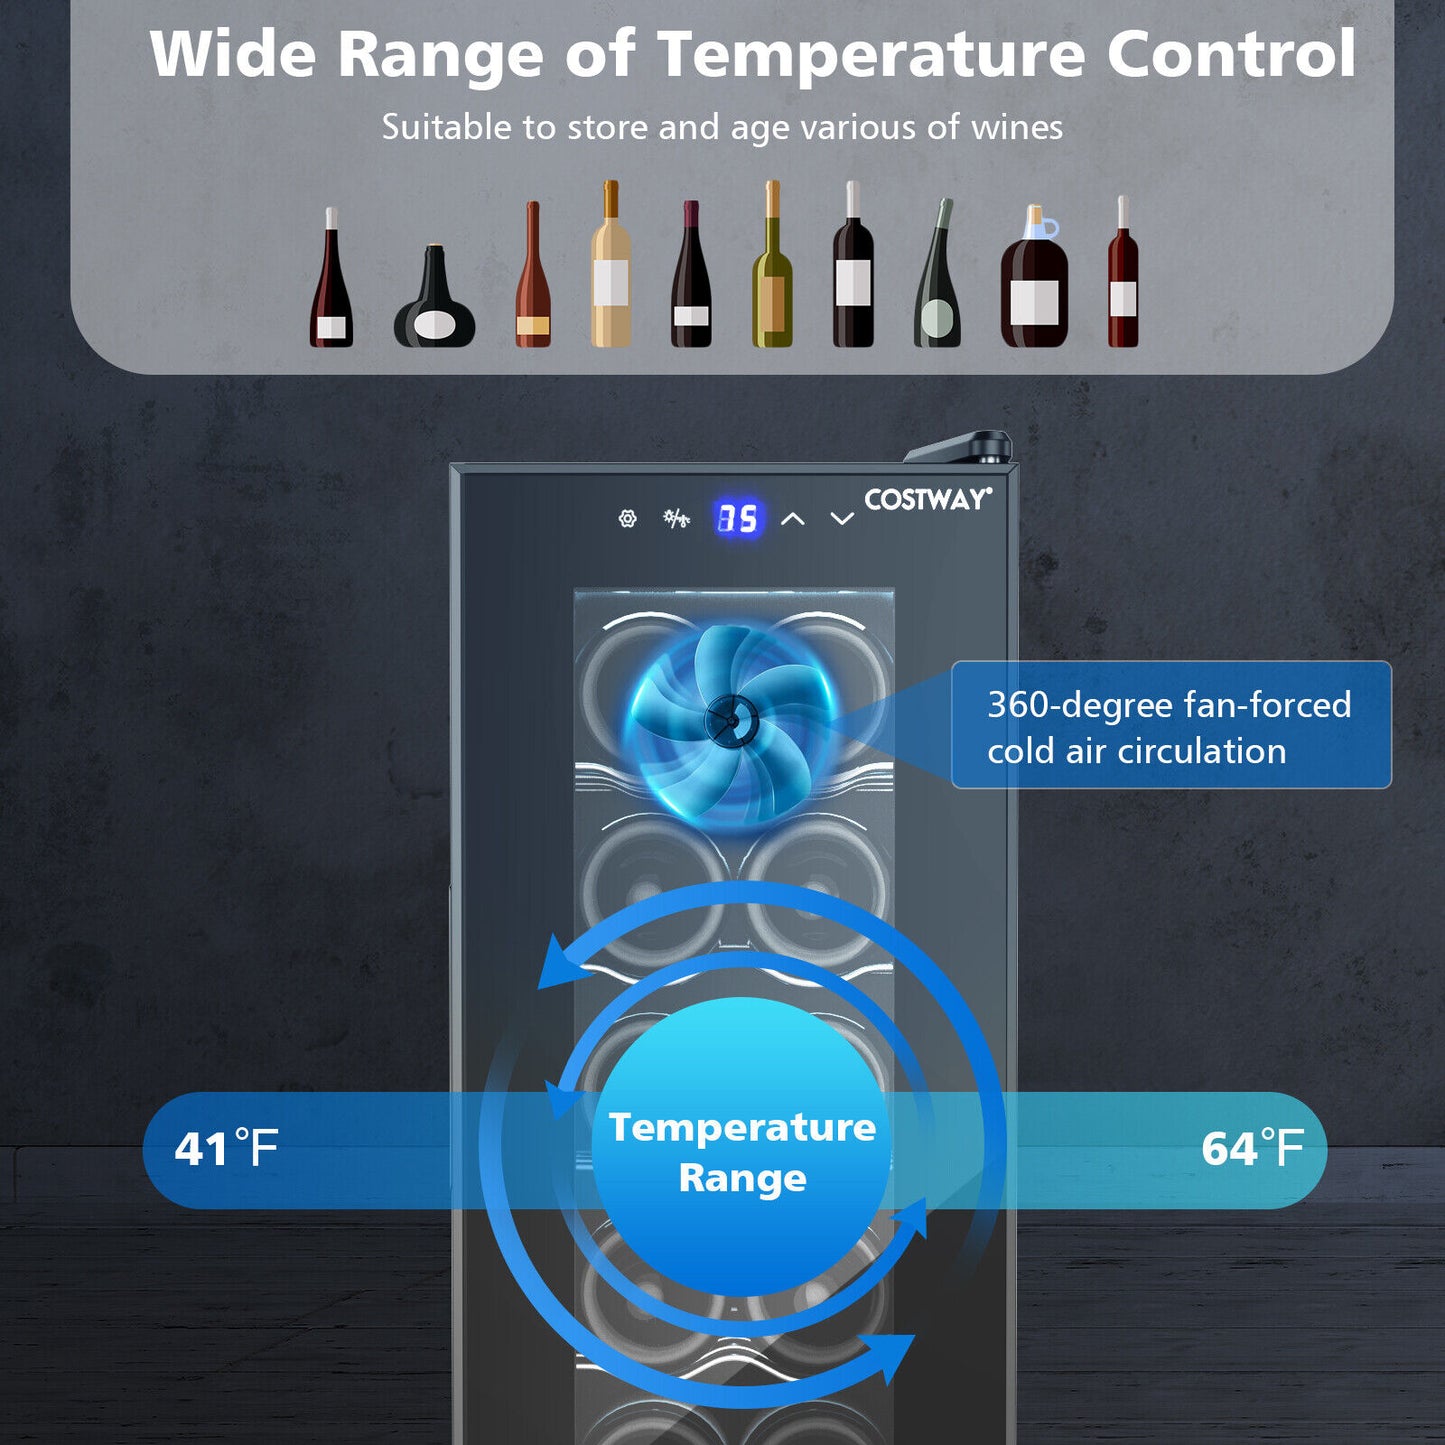 12 Bottle Compressor Wine Cooler Refrigerator-Black